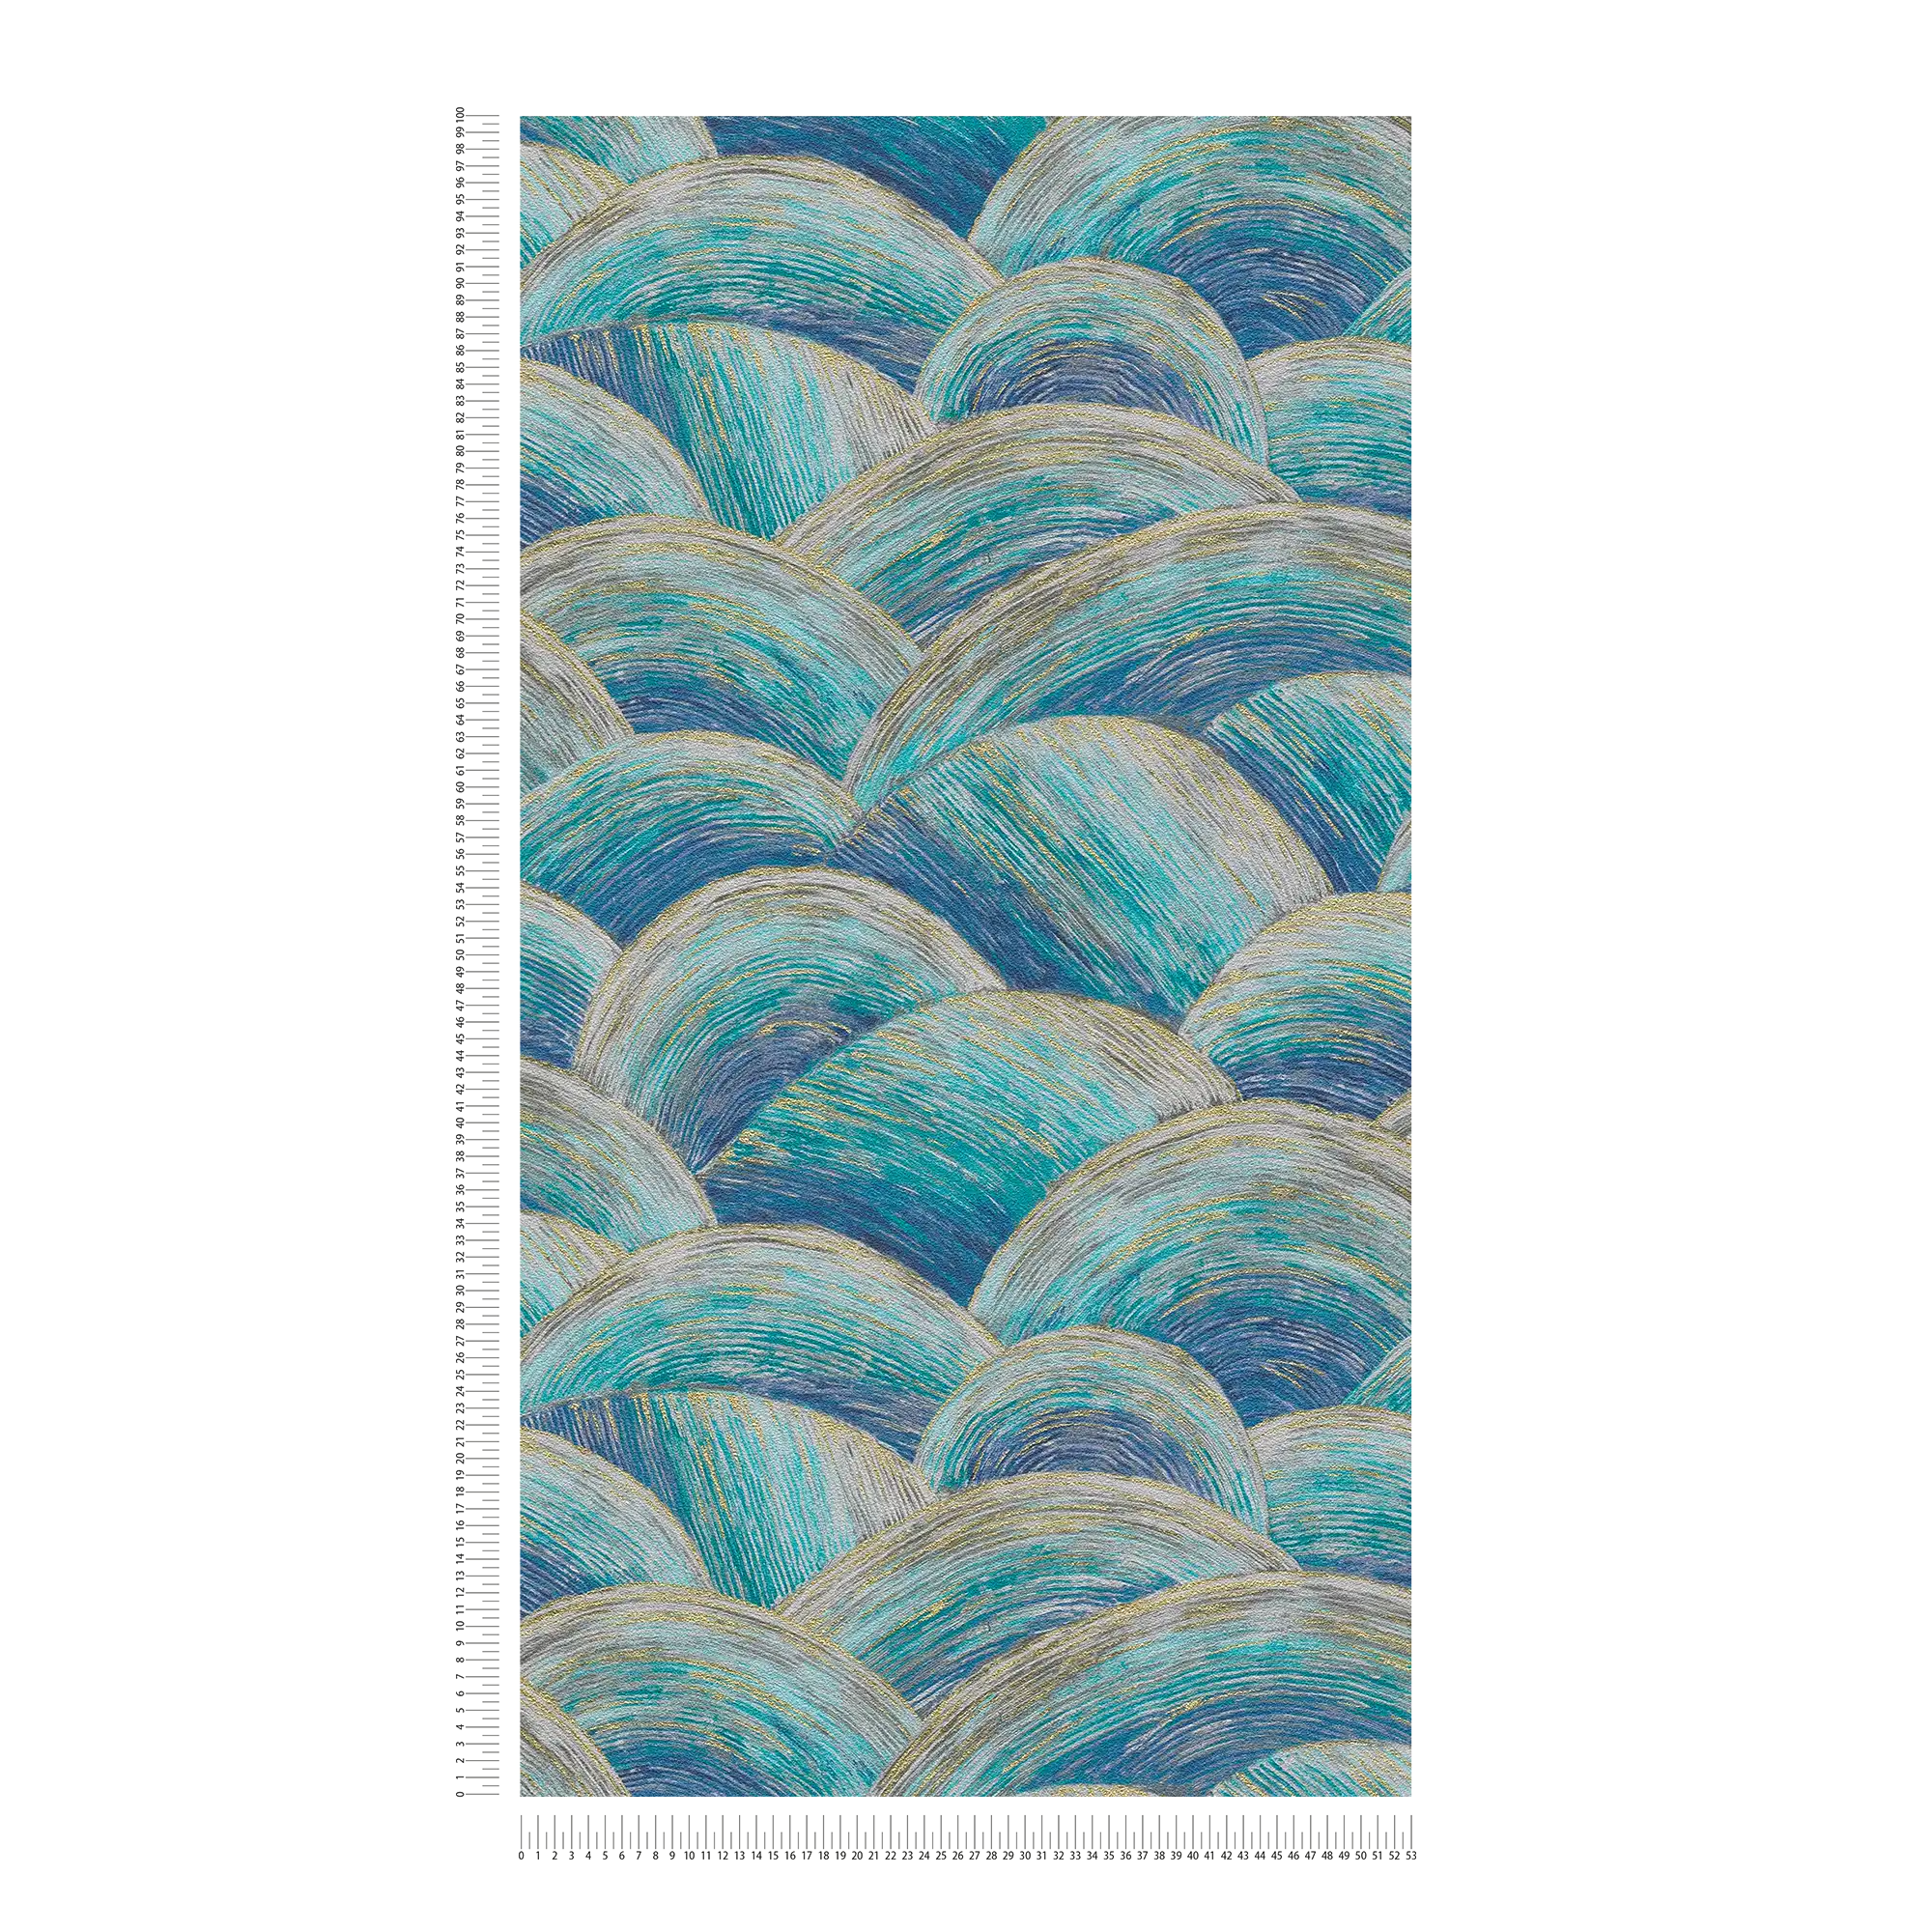             Papier peint abstrait intissé avec motif de vagues & effet brillant - bleu, turquoise, or
        